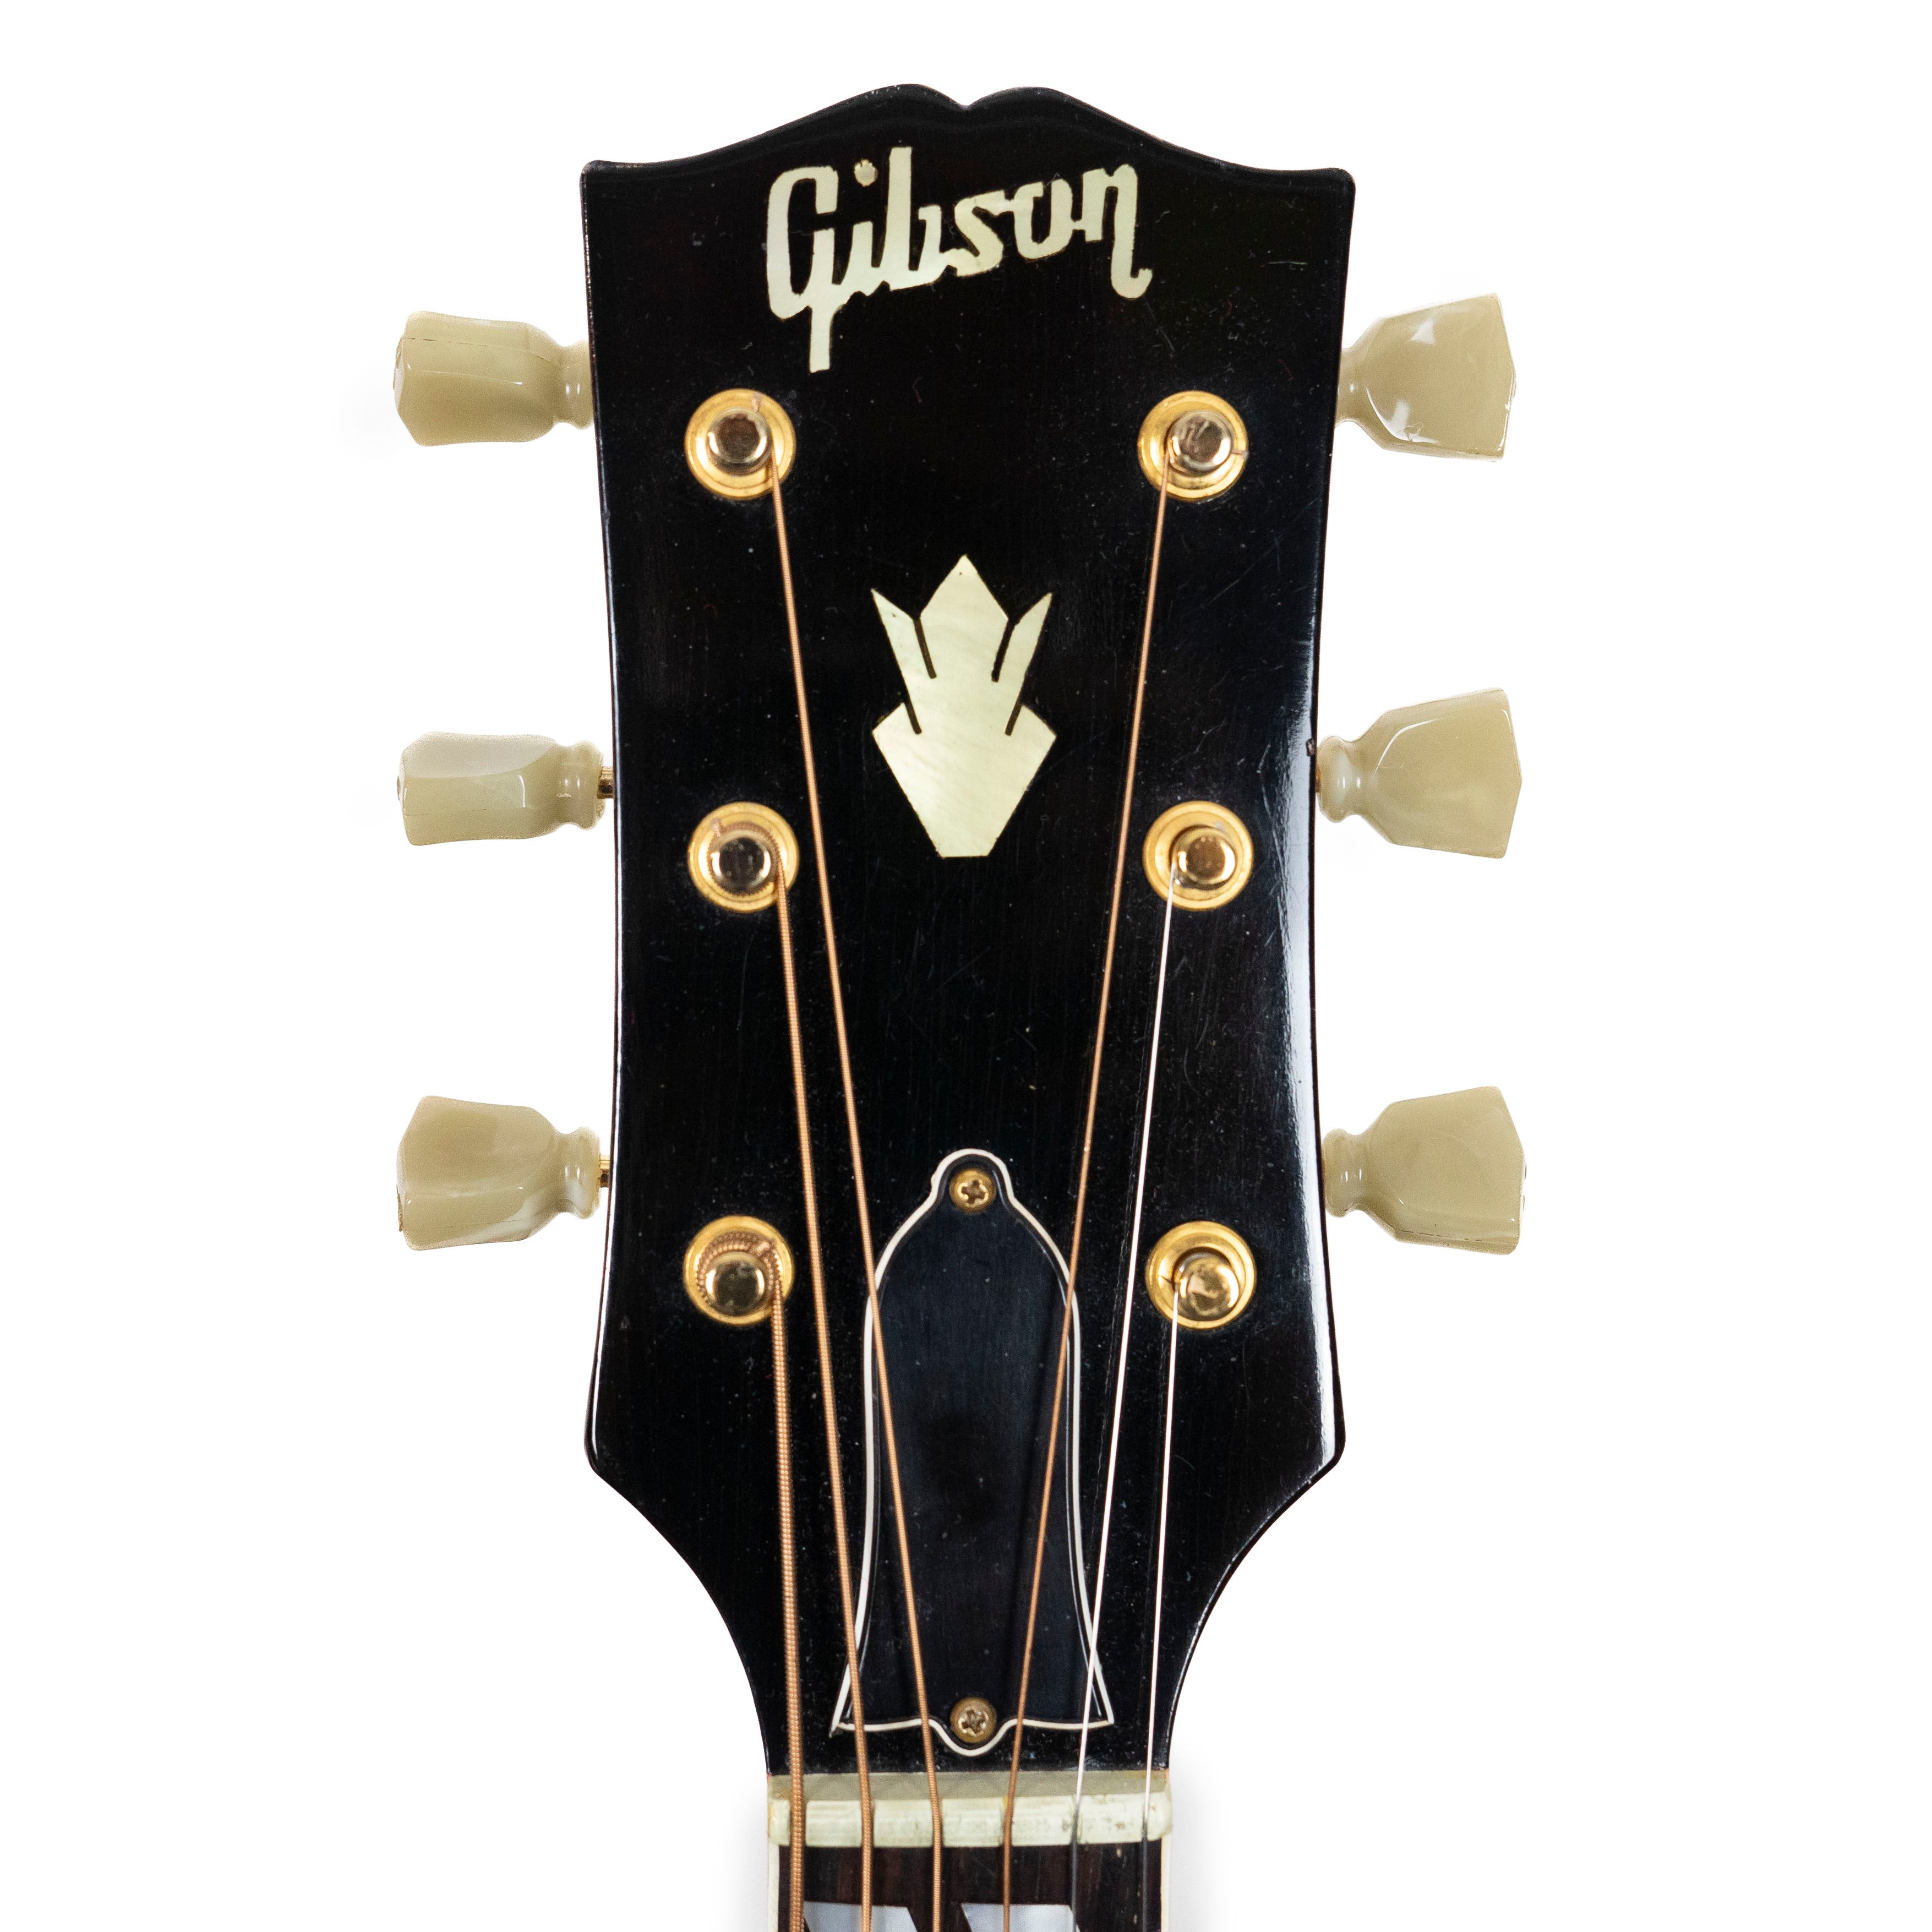 Gibson 1966 Hummingbird Cherry Sunburst